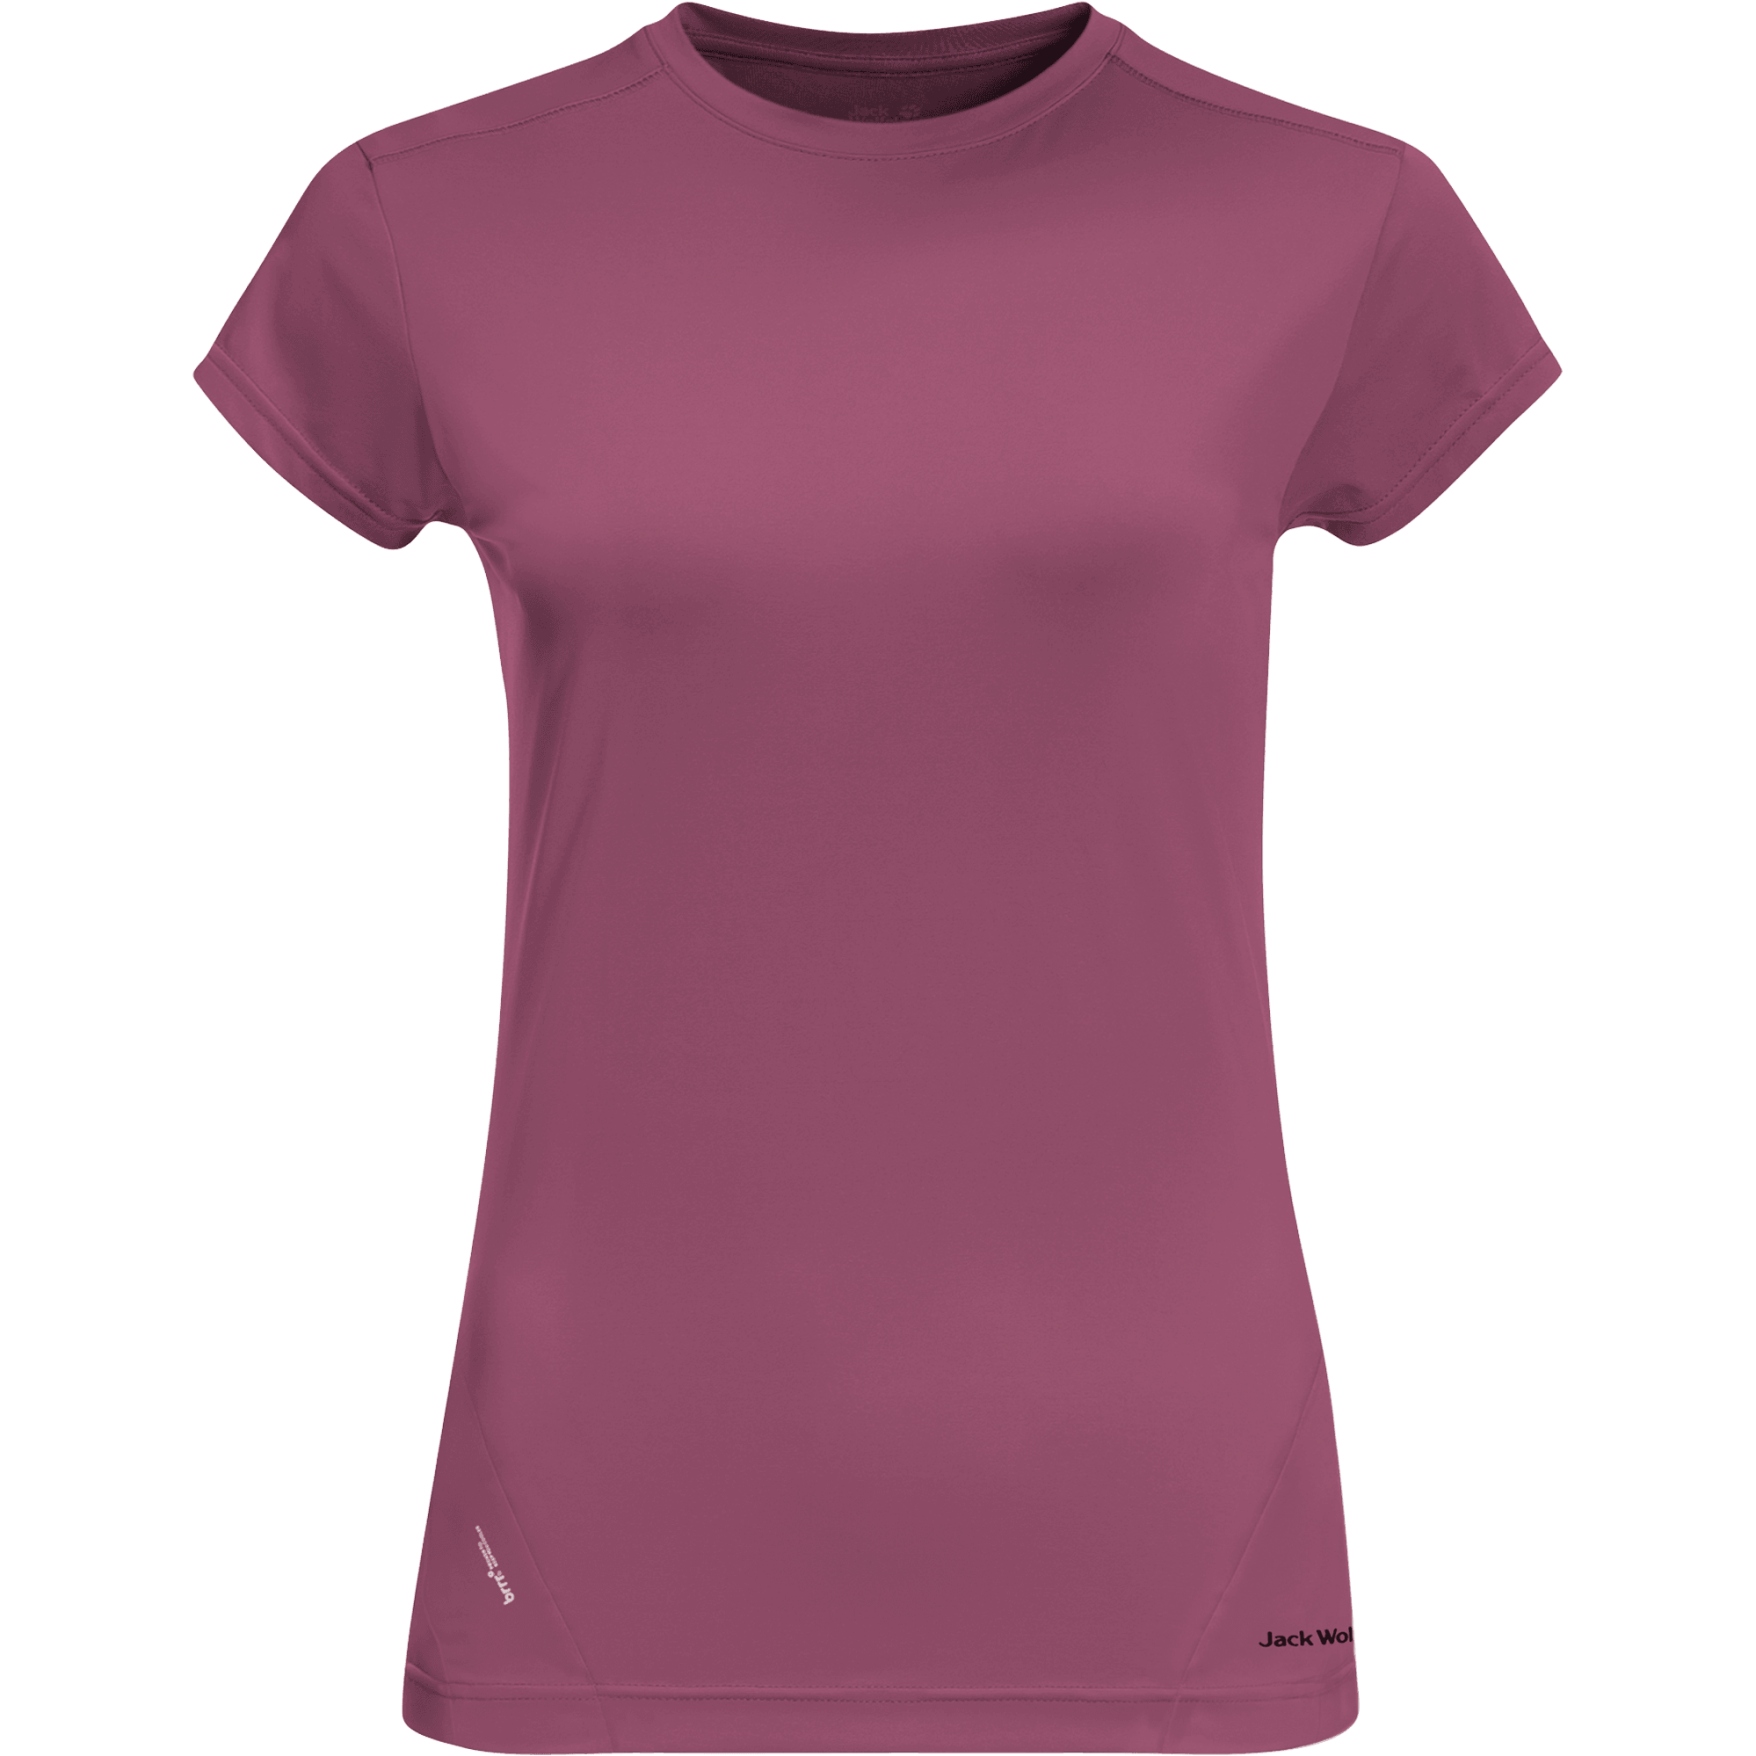 Produktbild von Jack Wolfskin Tasman Damen T-Shirt - violet quartz